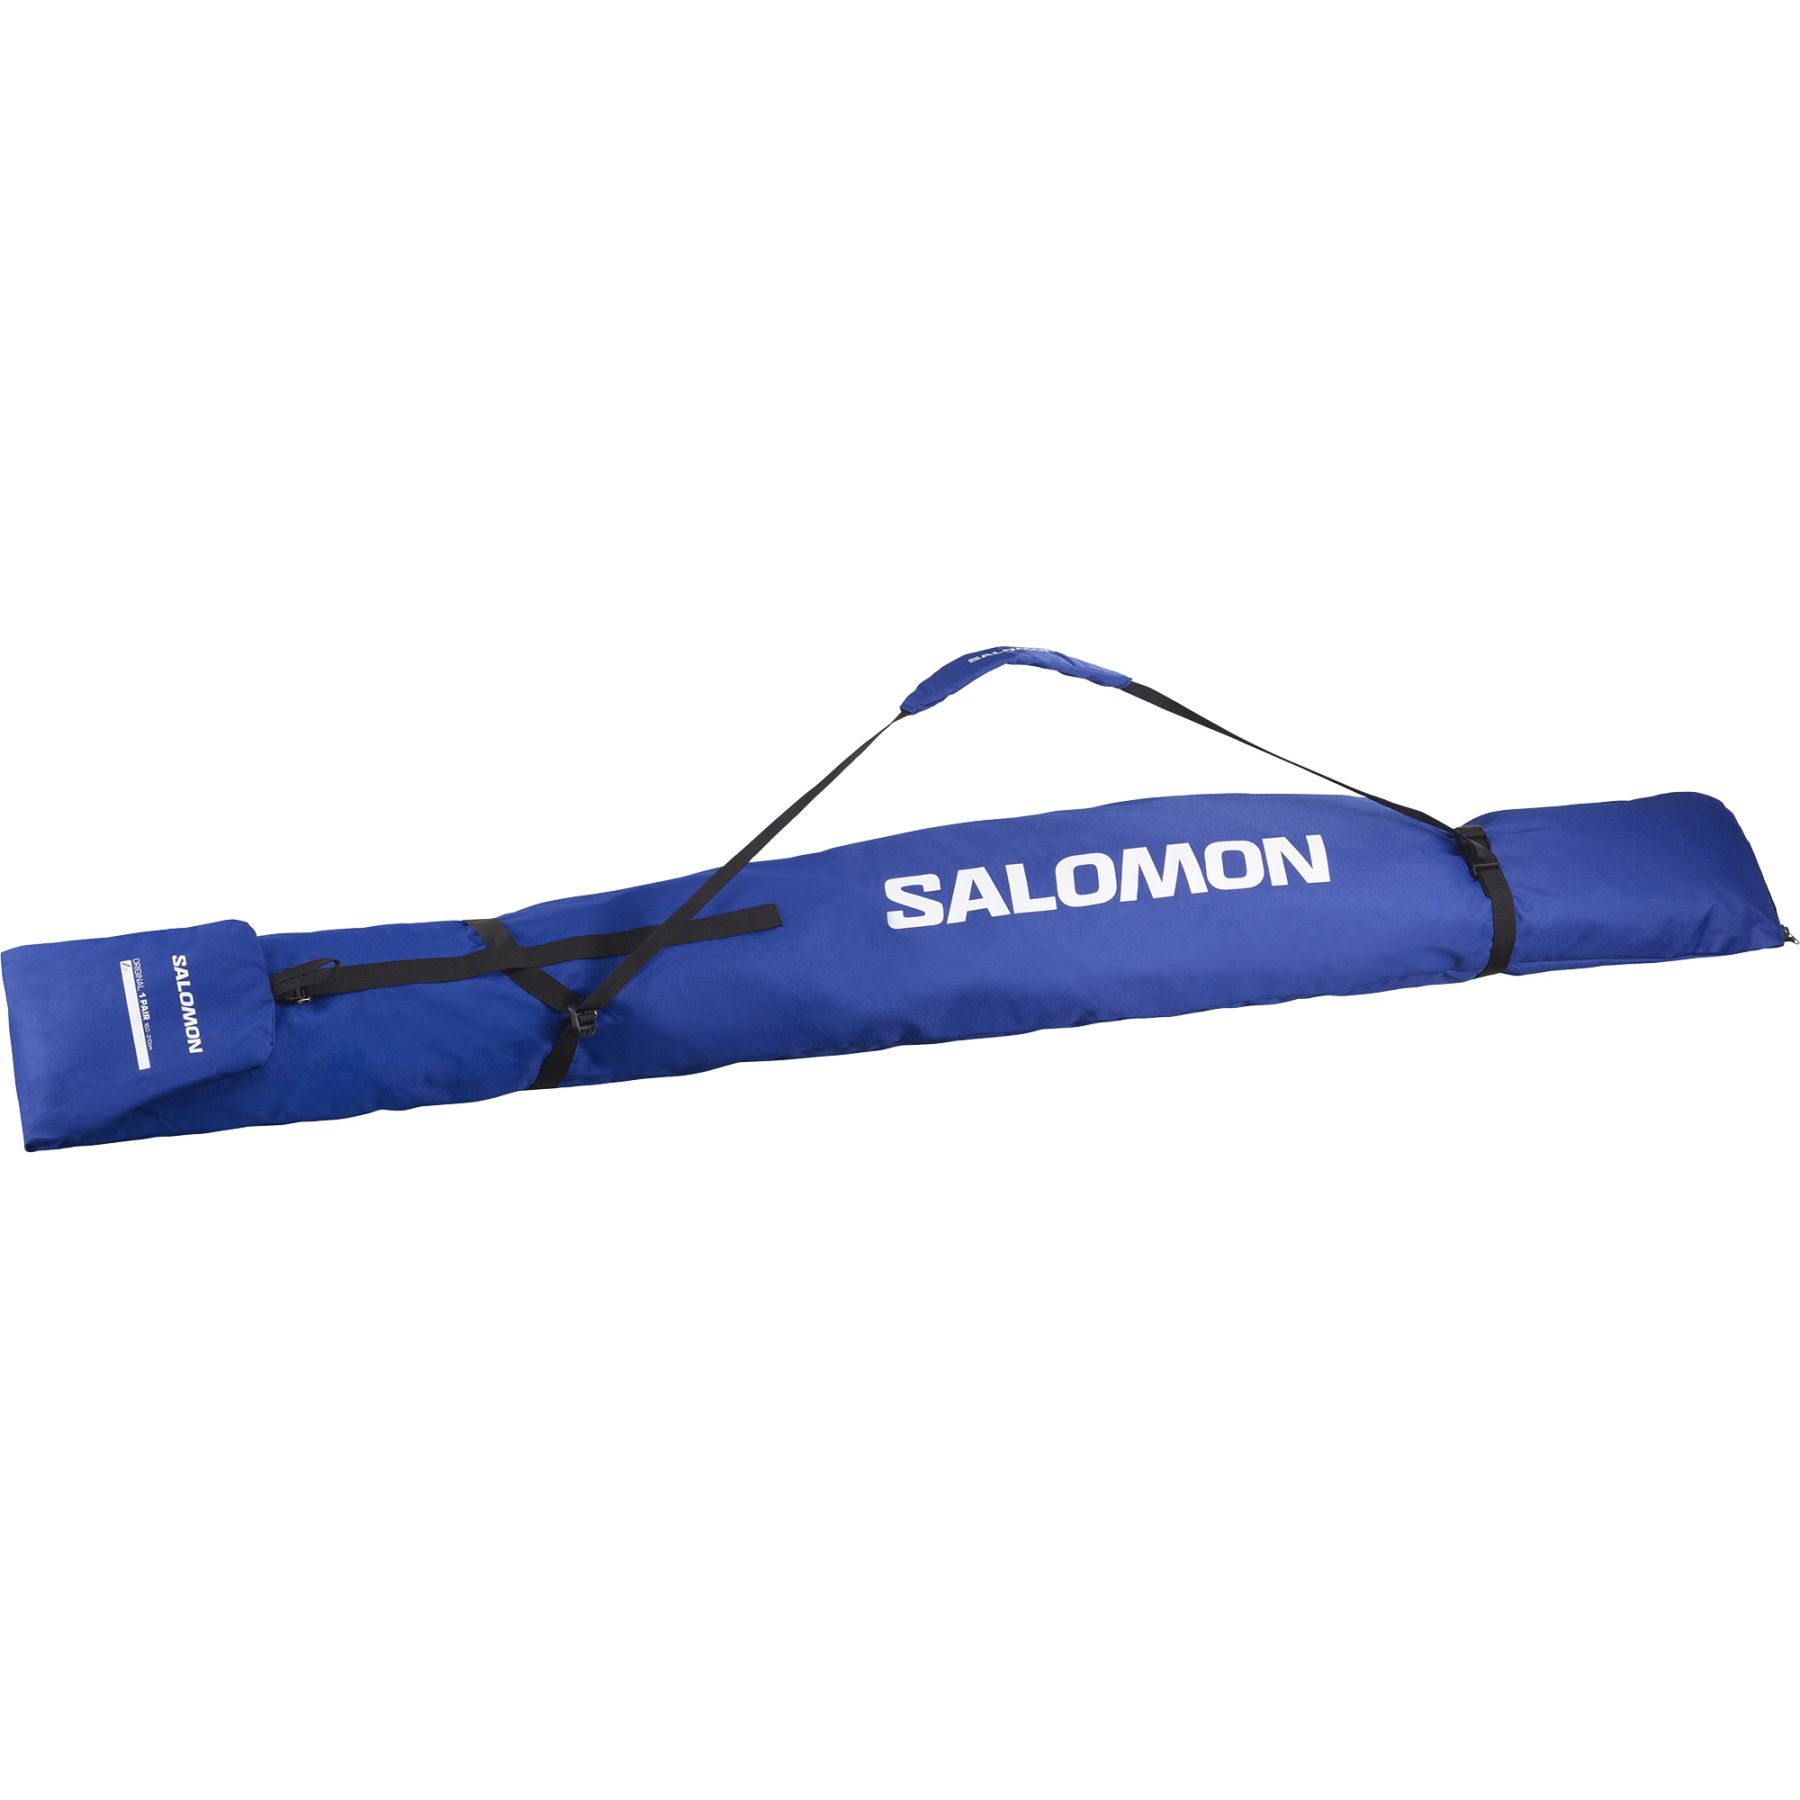 Brug Salomon Original 1P 160-210, skitaske, blå til en forbedret oplevelse